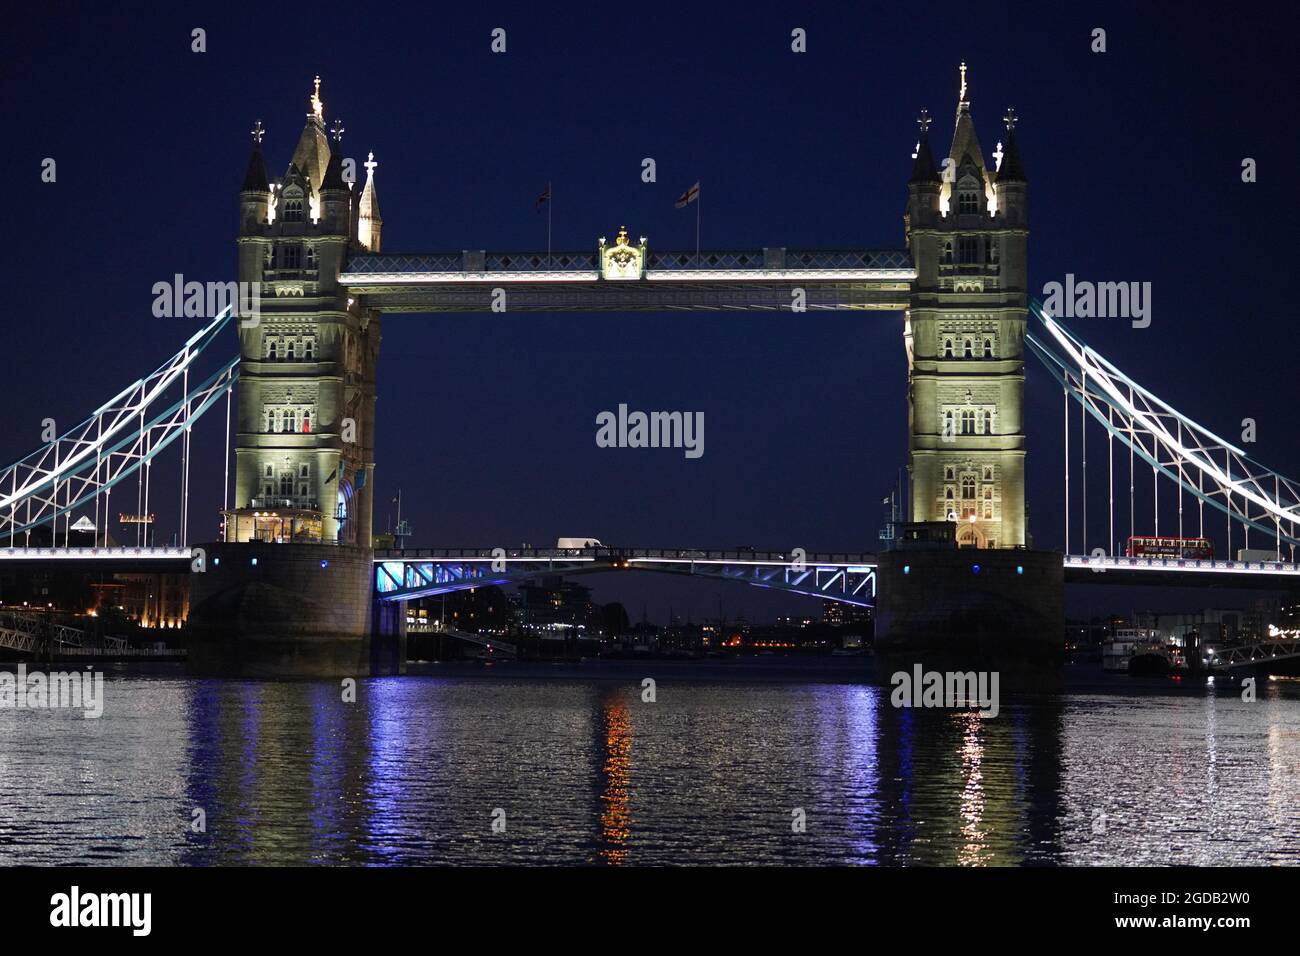 Vue sur le Tower Bridge, pris d'un bateau sur la Tamise lors d'une croisière en soirée. Date de la photo : vendredi 6 août 2021. Photo: Richard Gray/Alay Banque D'Images